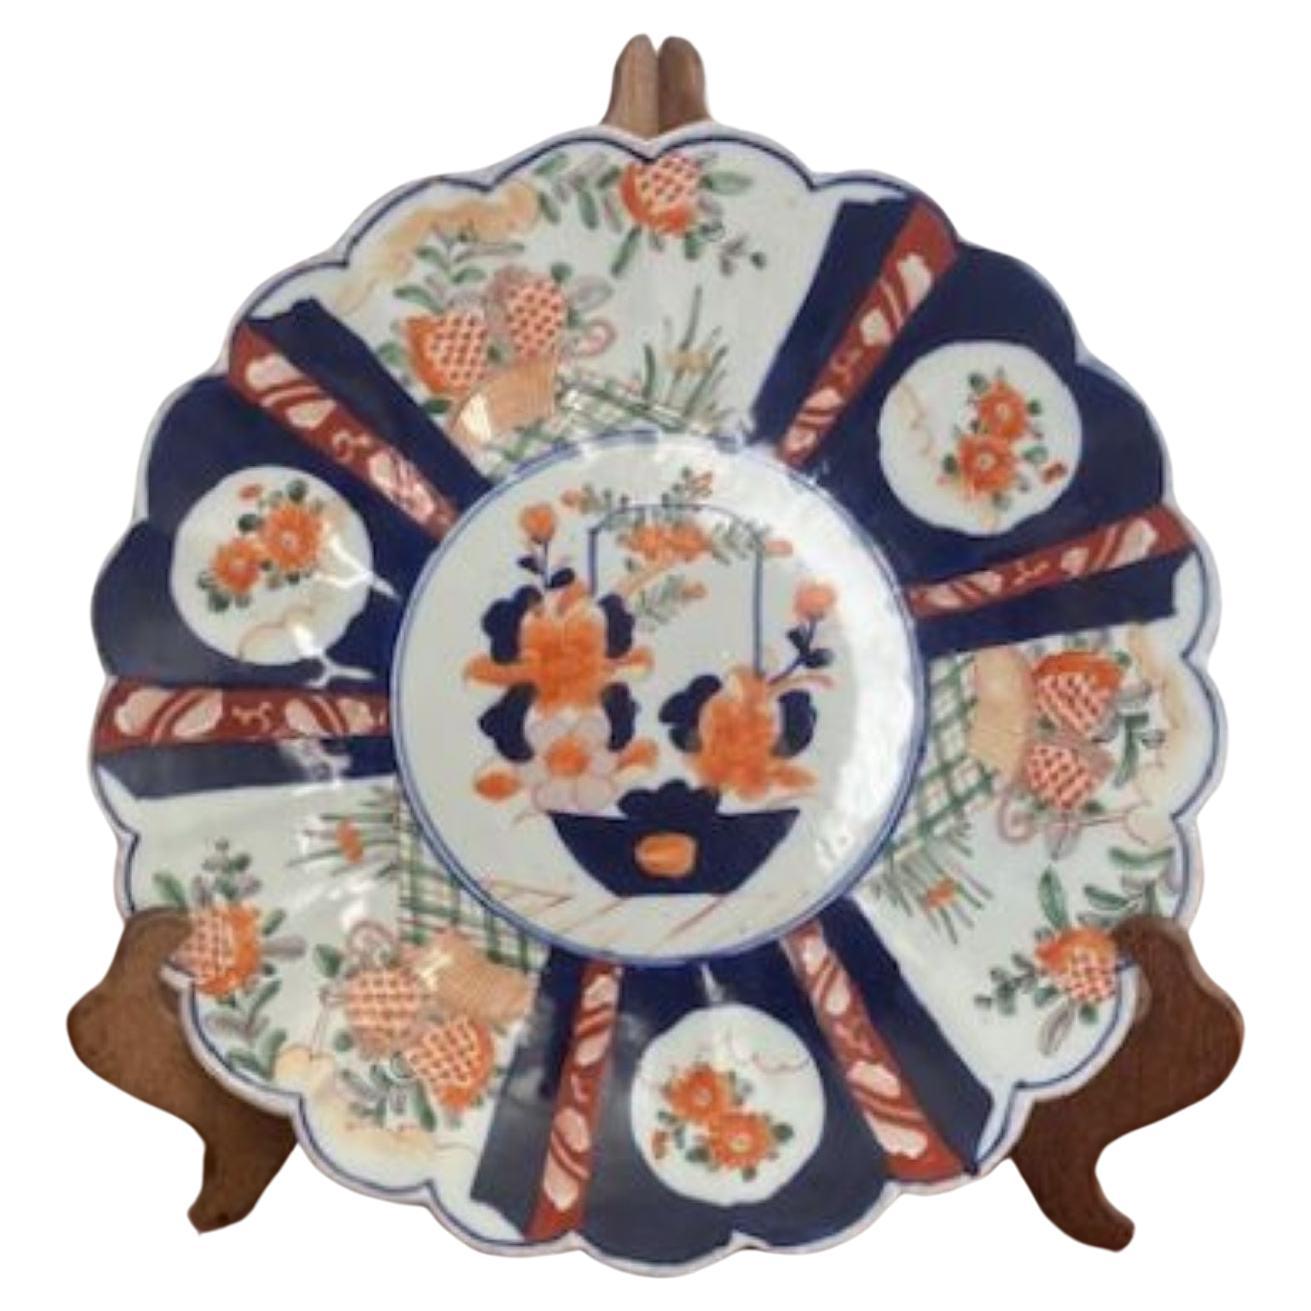 Antique Japanese Quality Imari Plate